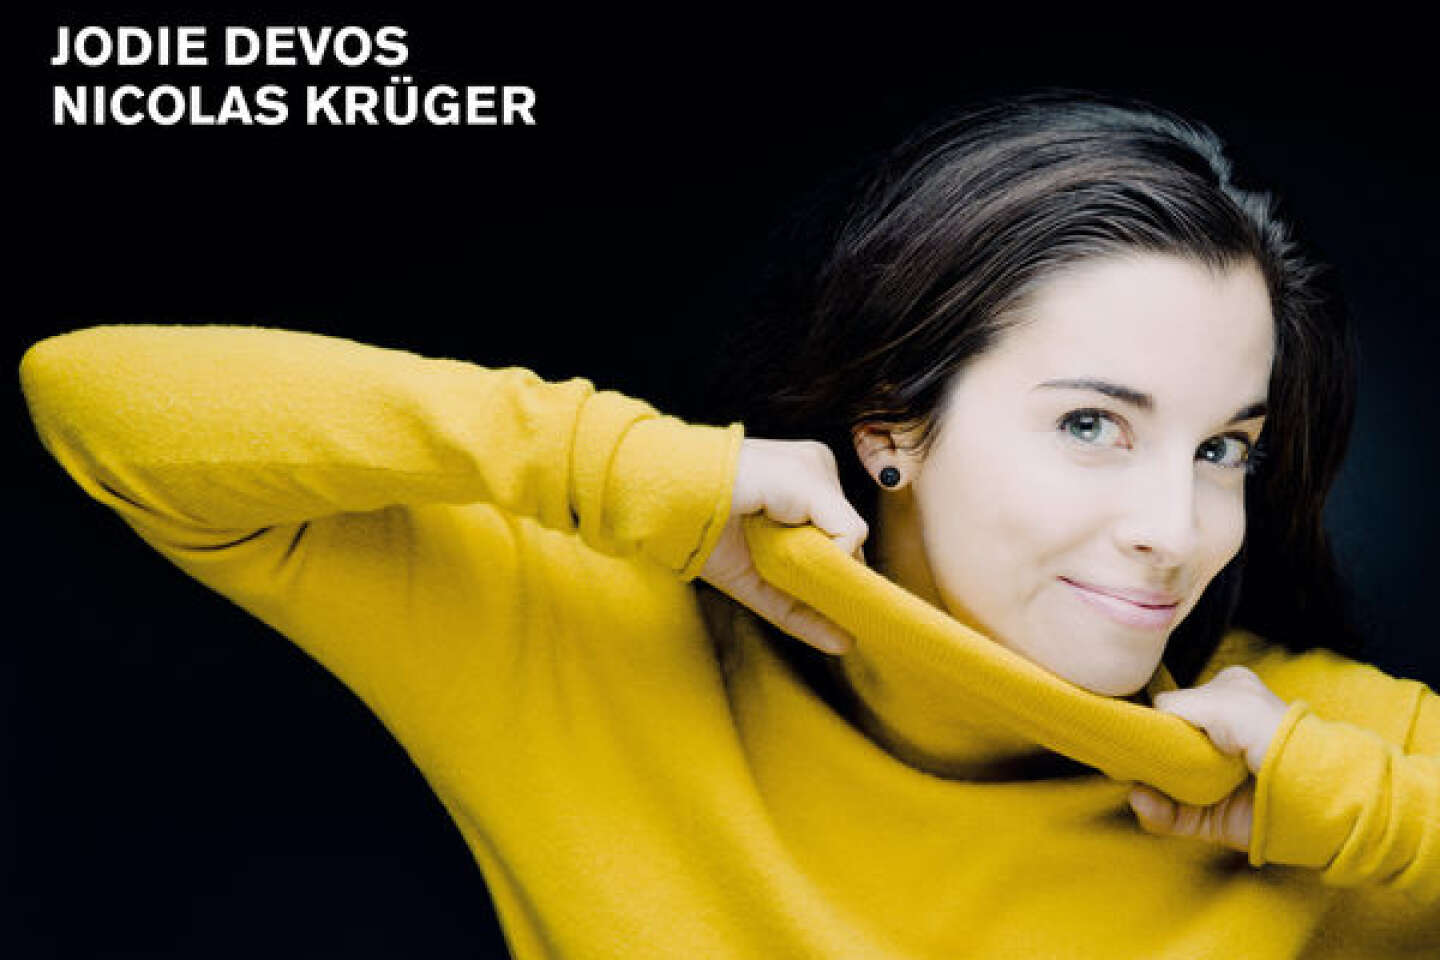 Regarder la vidéo La cantatrice belge Jodie Devos emportée par un cancer du sein à 35 ans